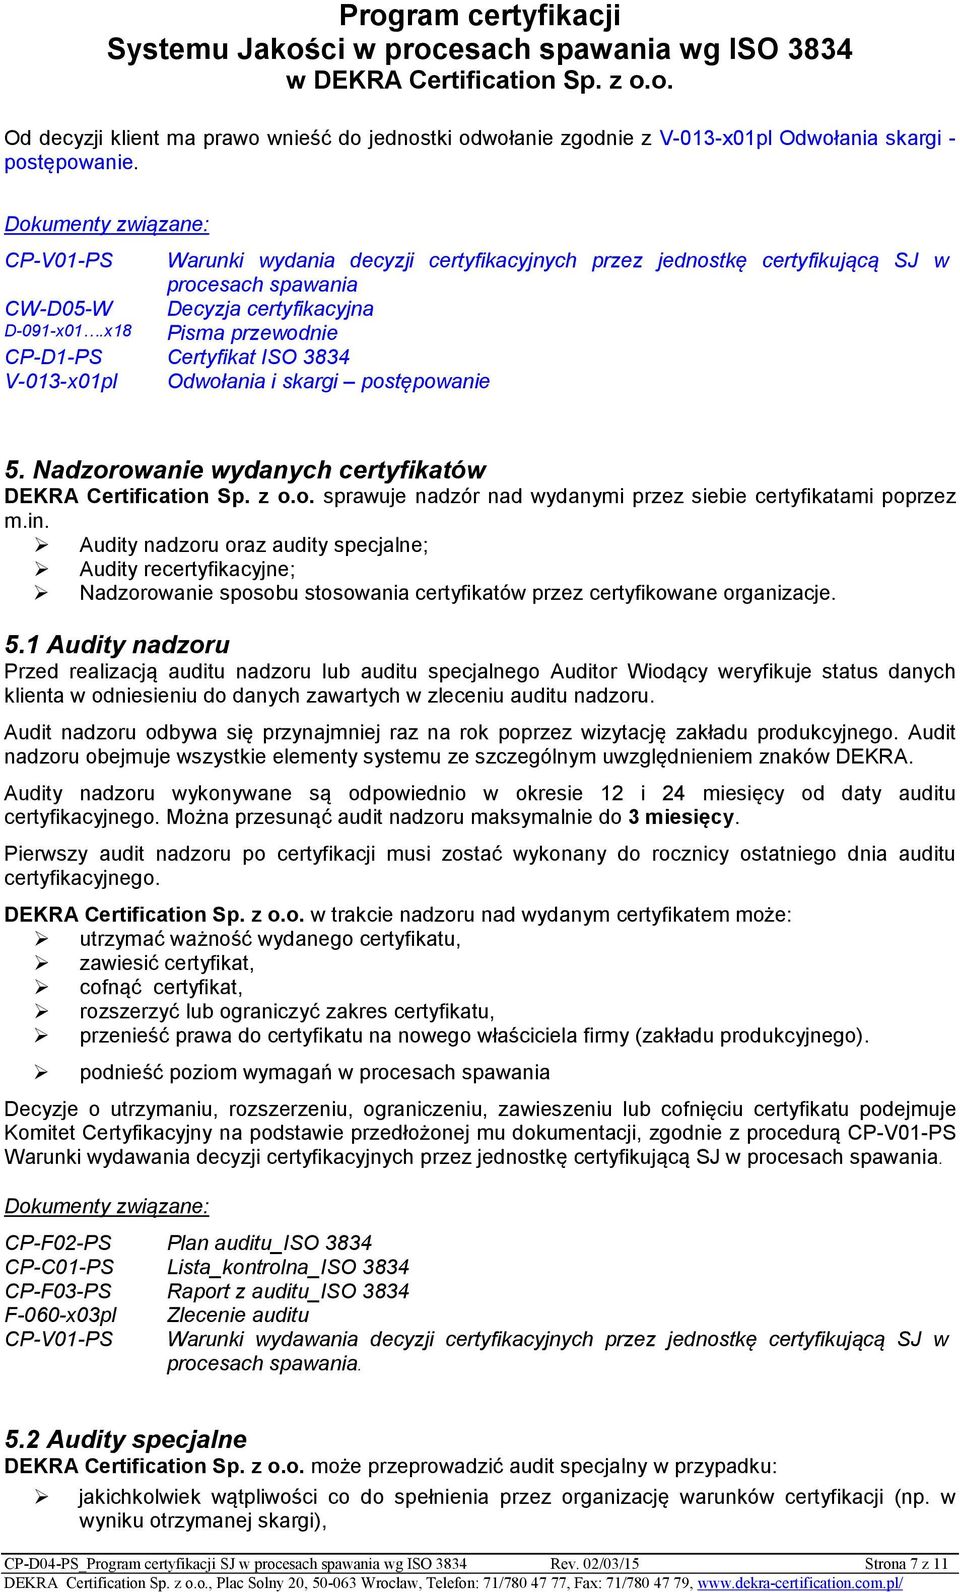 x18 Pisma przewodnie CP-D1-PS Certyfikat ISO 3834 V-013-x01pl Odwołania i skargi postępowanie 5. Nadzorowanie wydanych certyfikatów DEKRA Certification Sp. z o.o. sprawuje nadzór nad wydanymi przez siebie certyfikatami poprzez m.